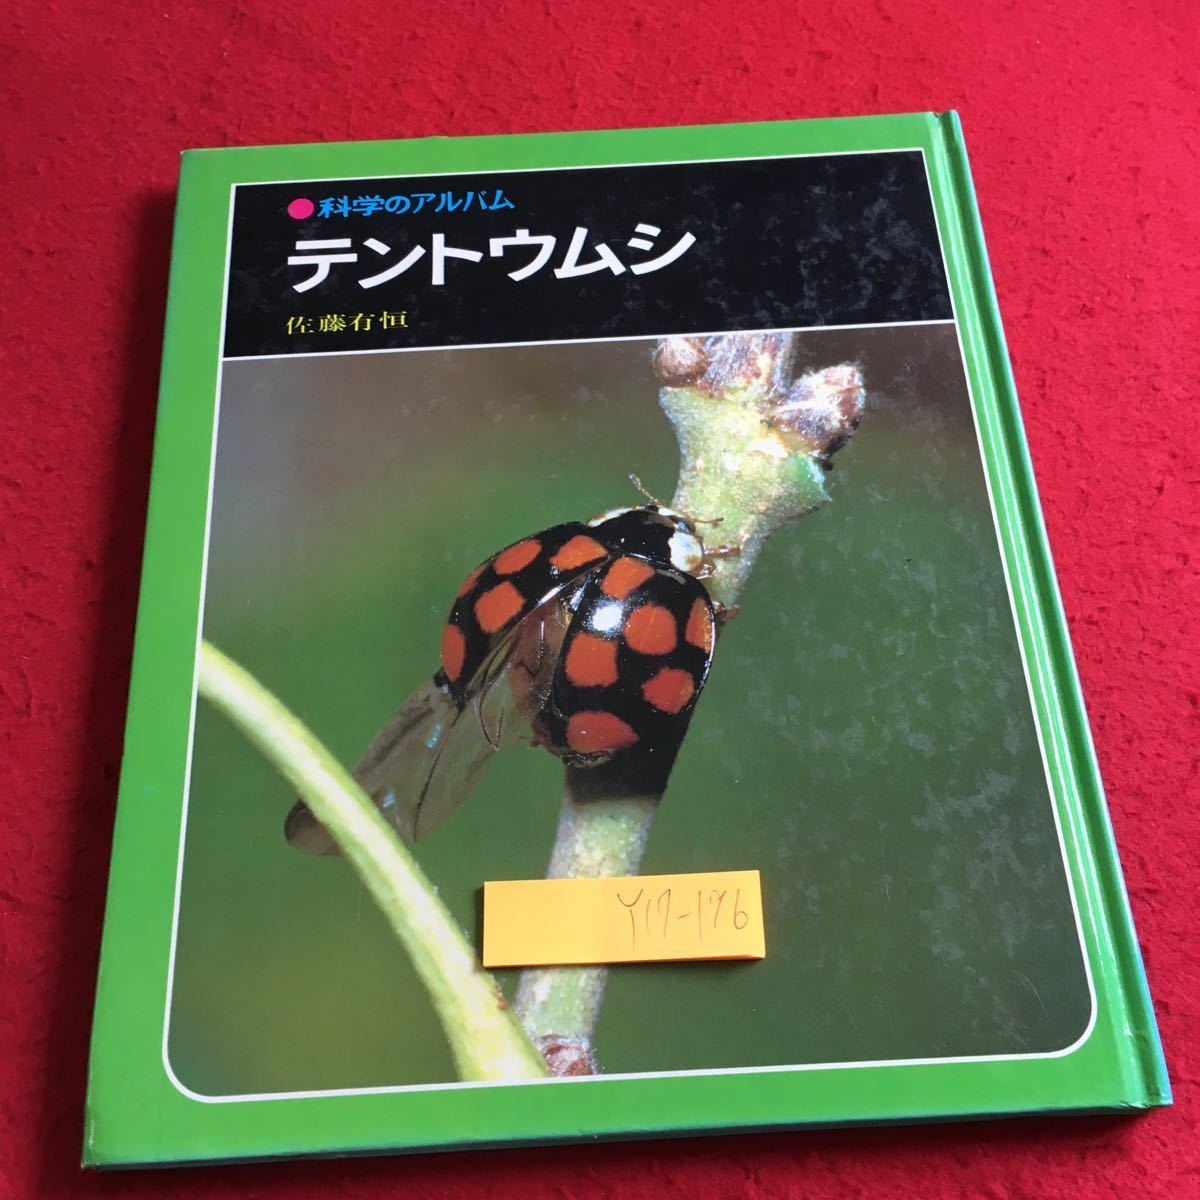 Y17-196 наука. альбом палатка umsi Sato иметь .... книжный магазин 1981 год выпуск сырой . компания . насекомое . насекомое есть maki( Abu Ram si)... и т.п. 